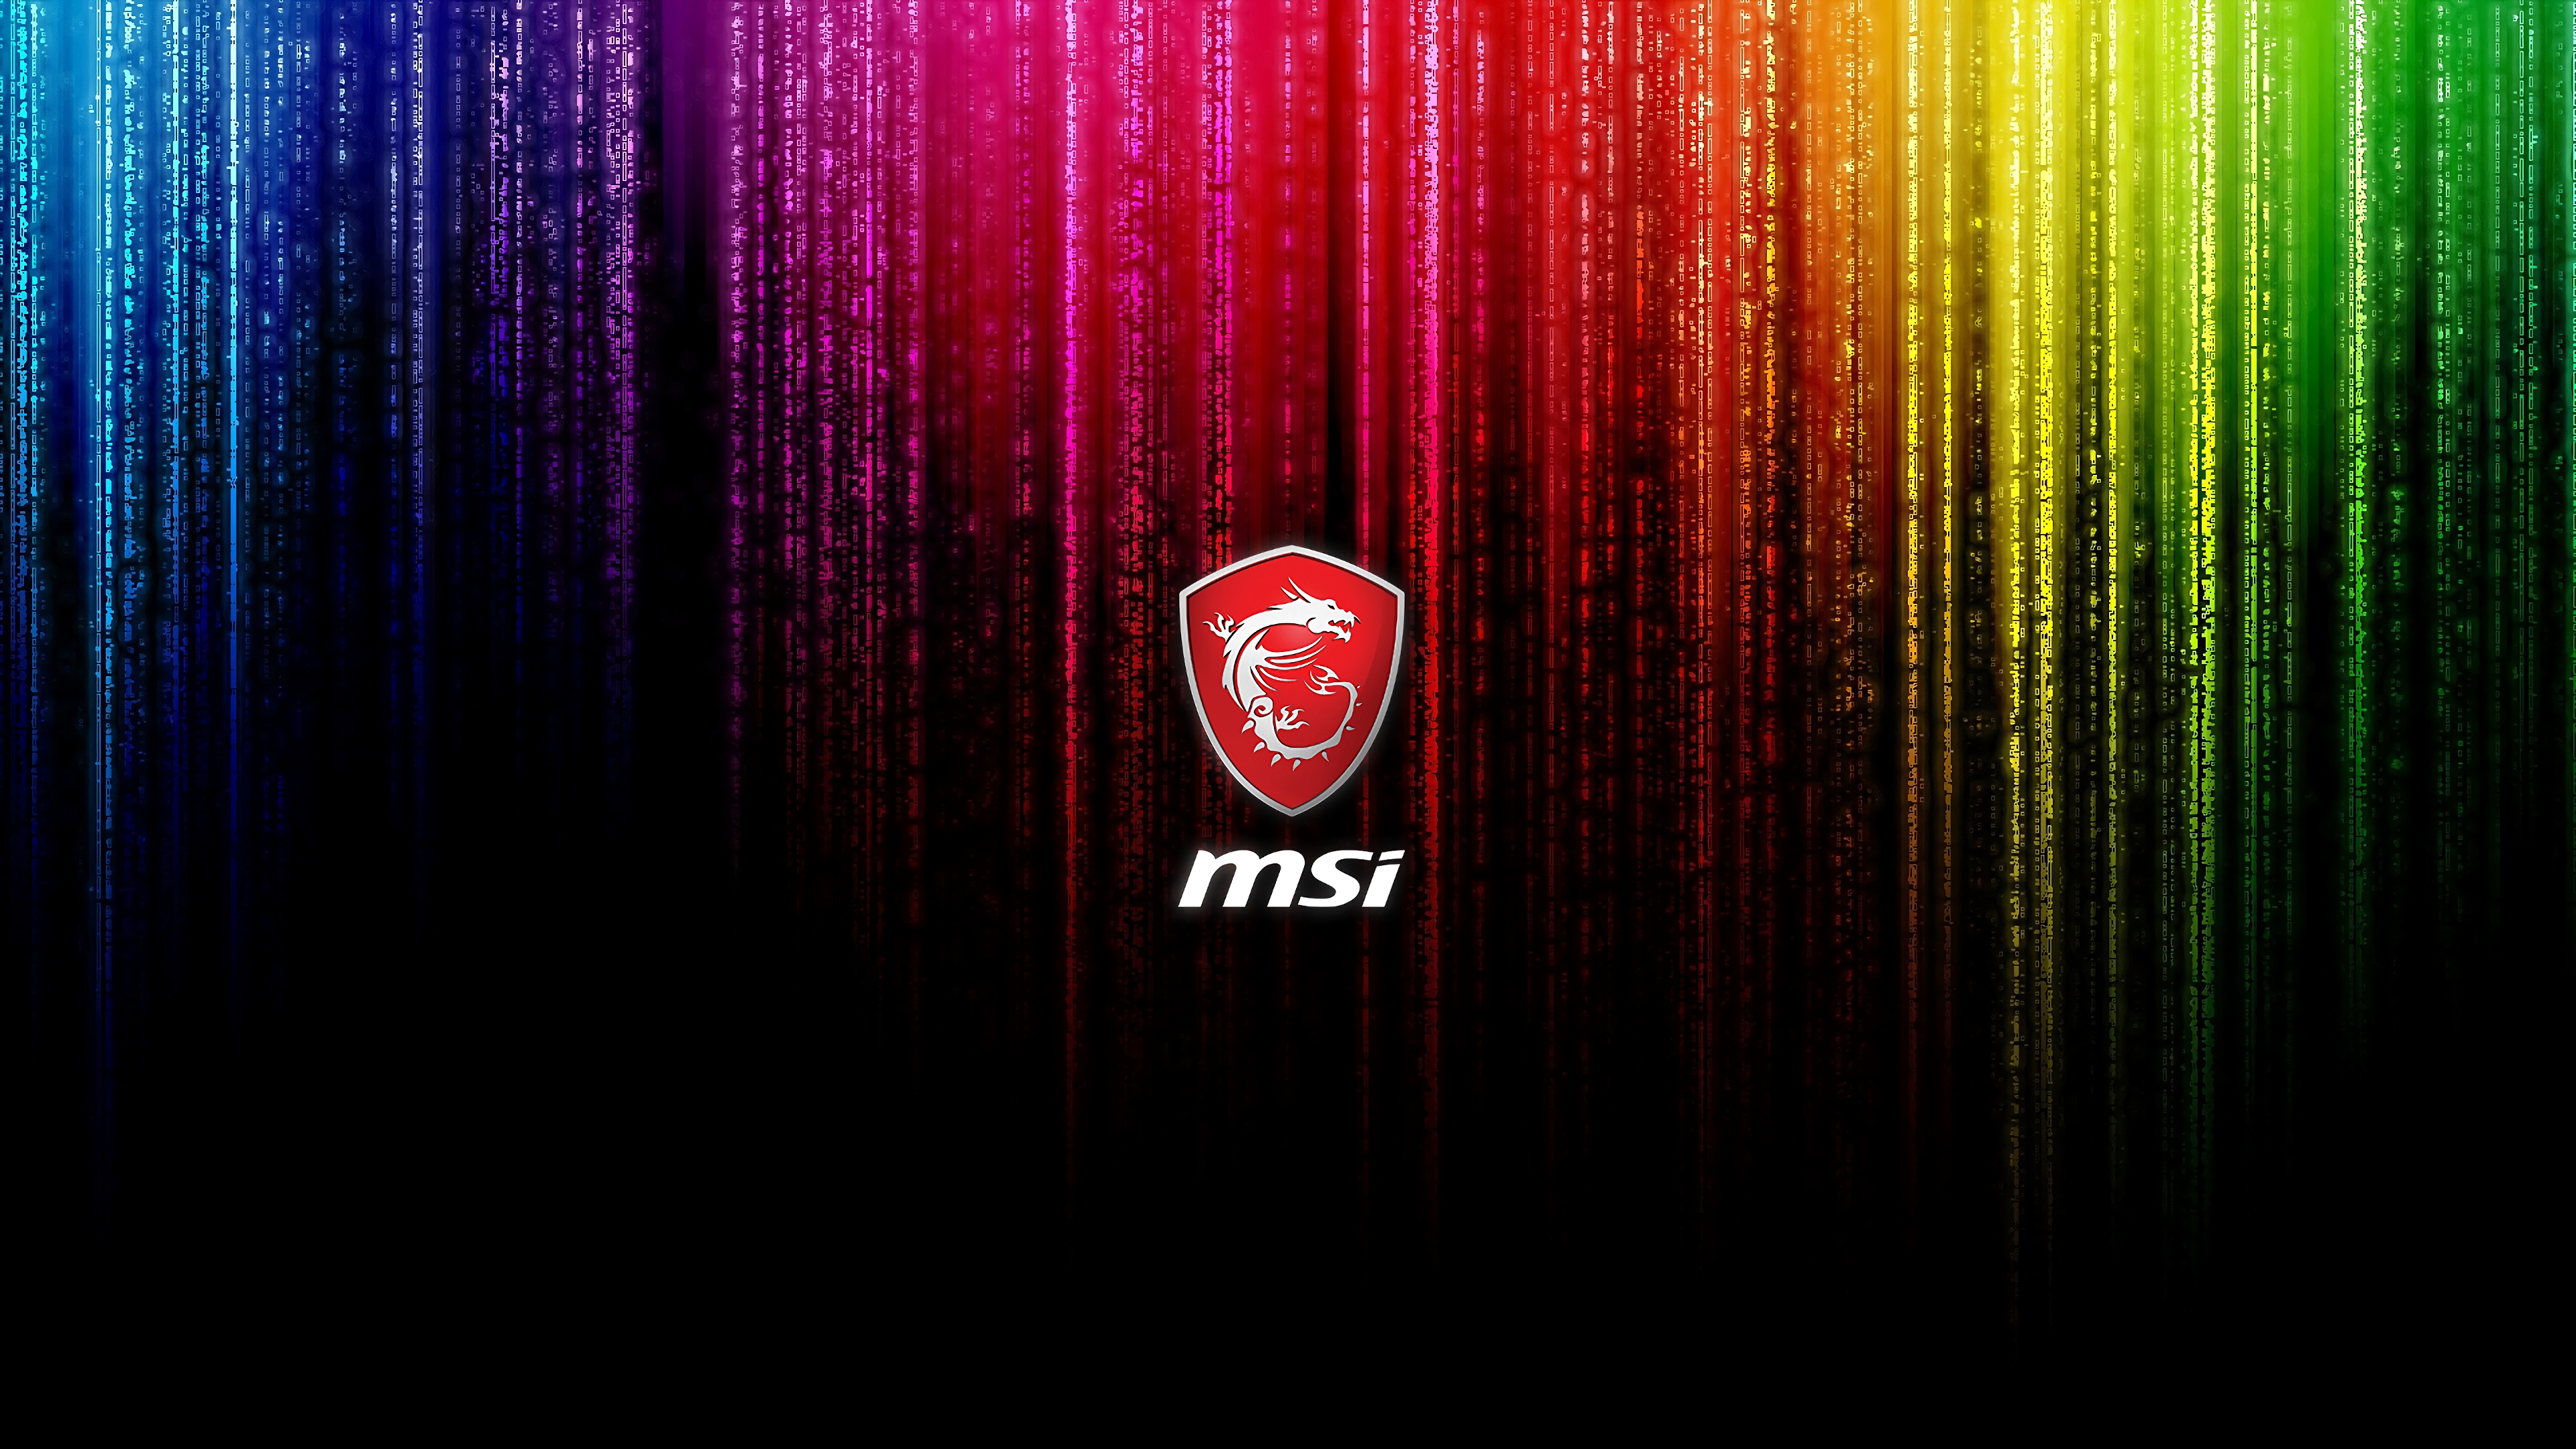 MSI Wallpaper 4K - Hình nền máy tính 4k - Ảnh đẹp Free